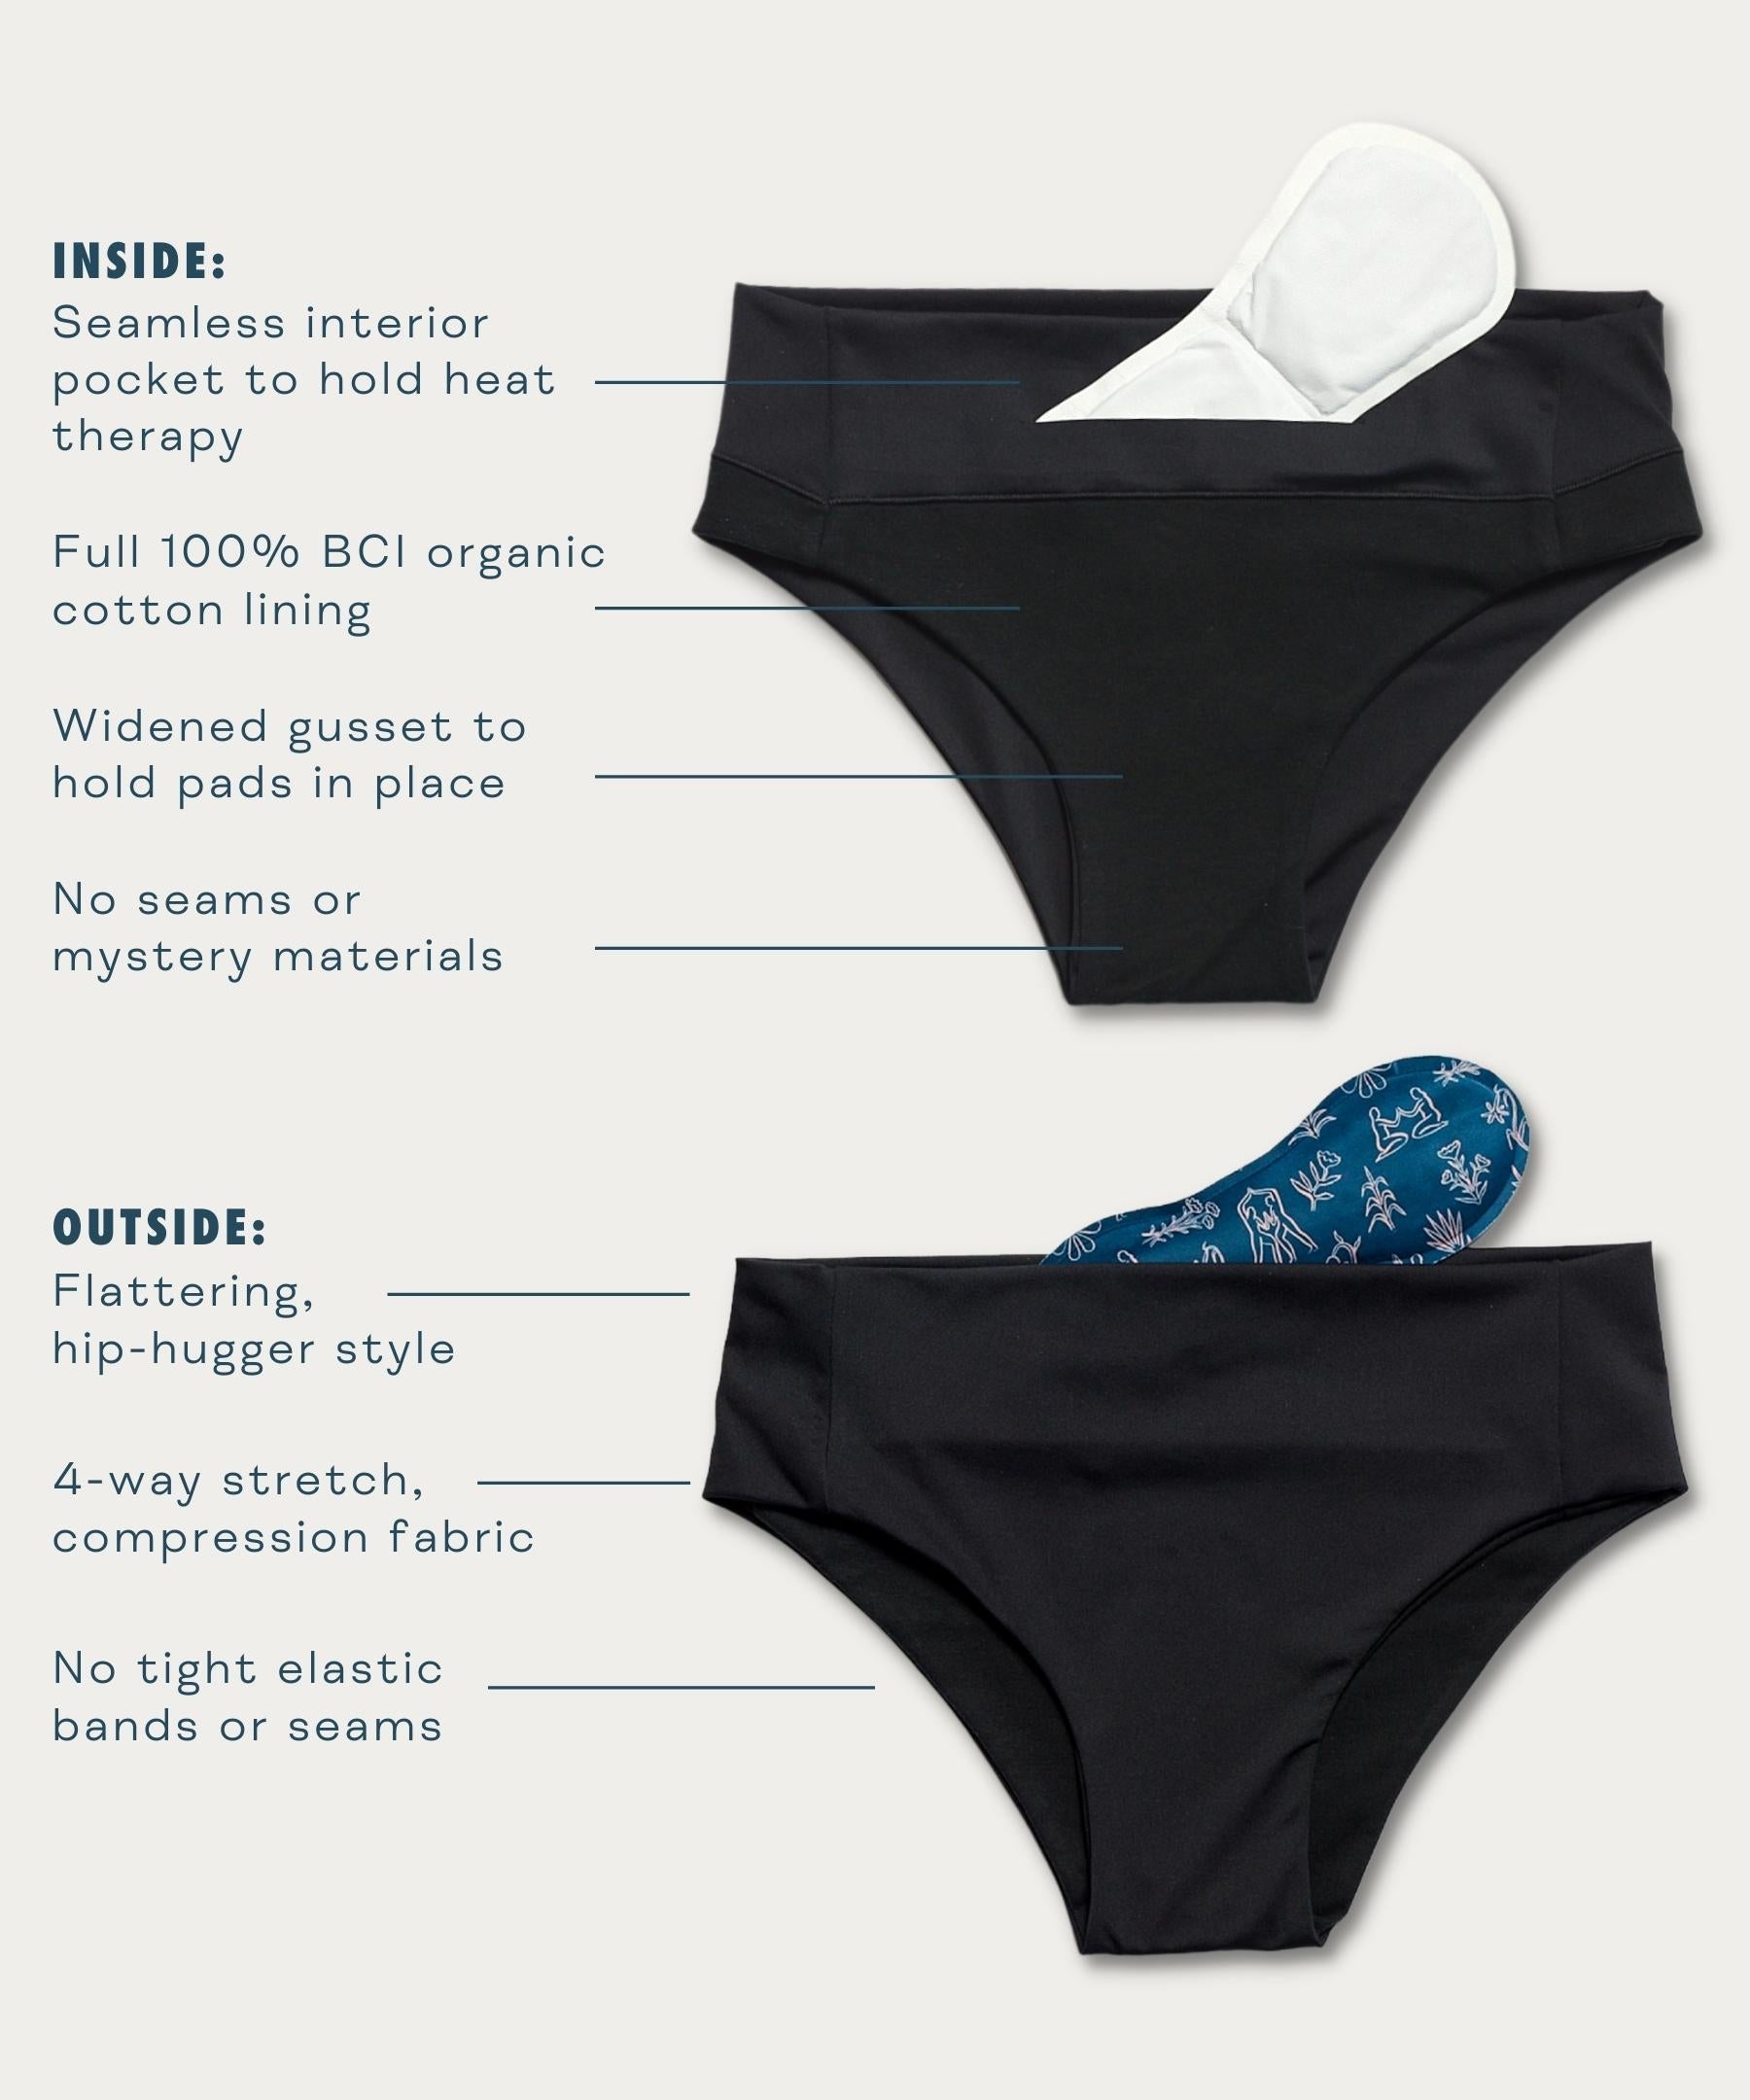 VieWear Period Comfort Underwear attribute detail chart